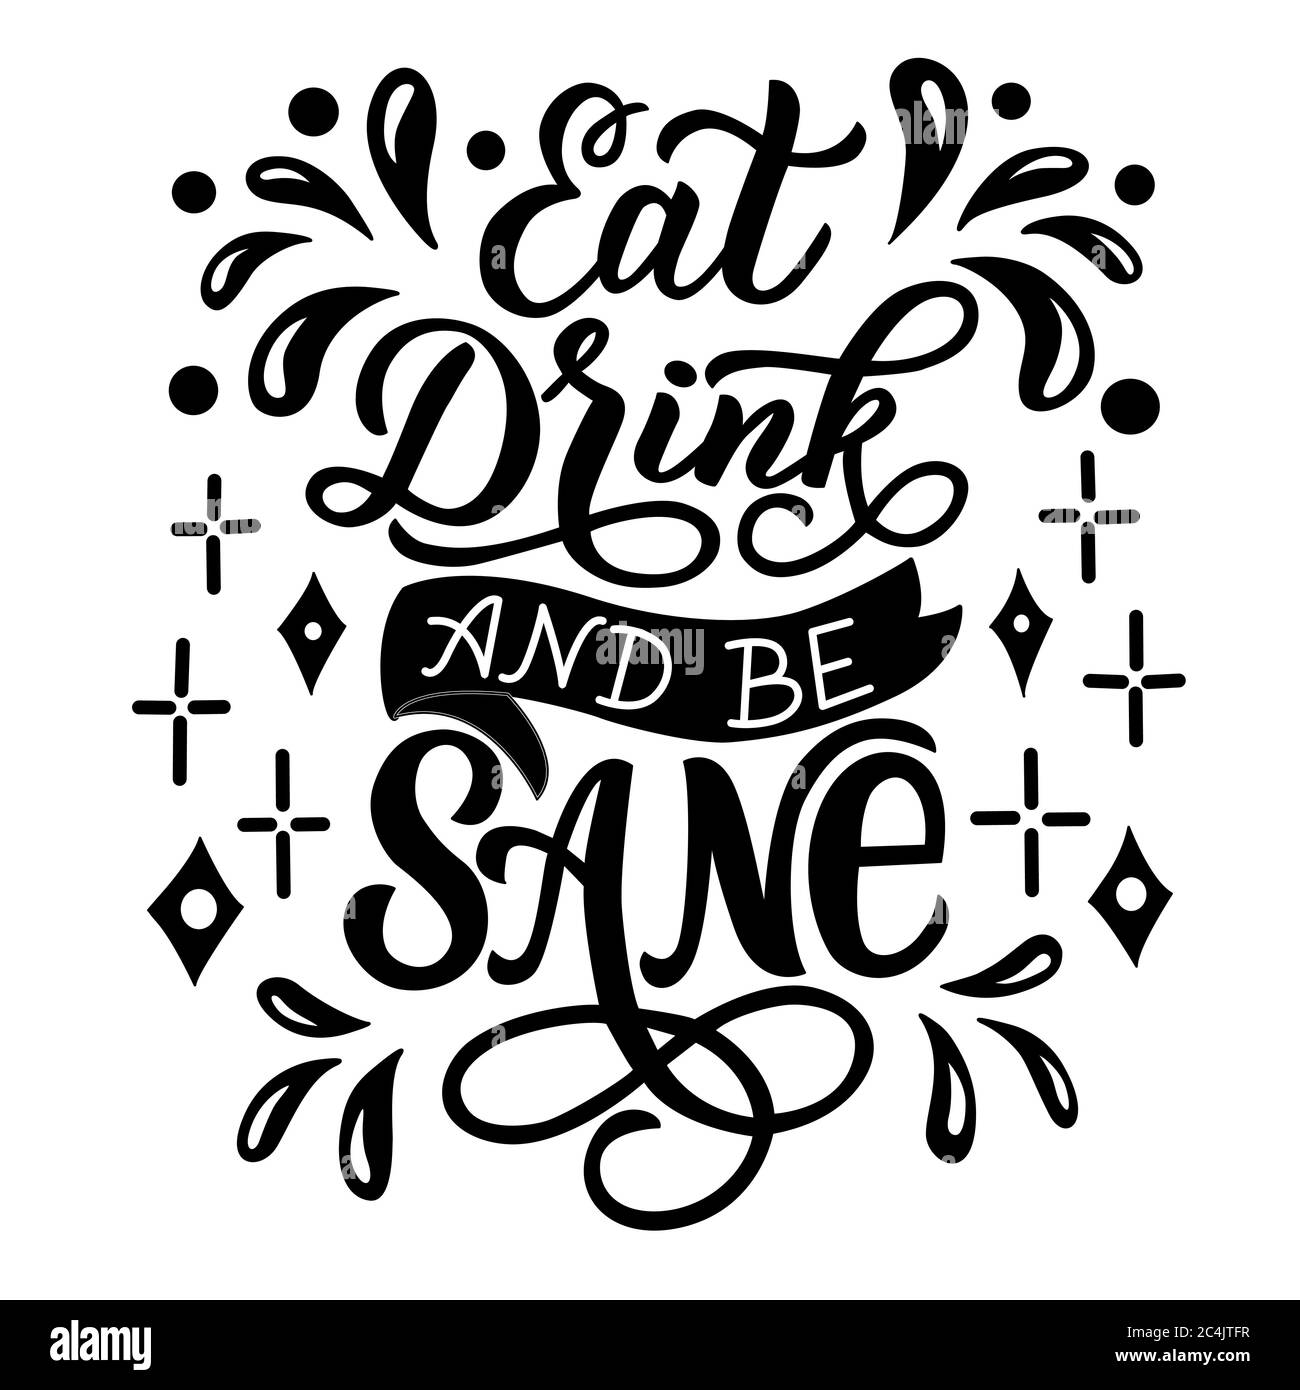 Essen trinken und gesund sein - Vektor-Schriftzug auf weißem Hintergrund. Für die Gestaltung von Postkarten, Plakaten, Covers, Bechern, T-Shirts, Rucksäcken Stock Vektor